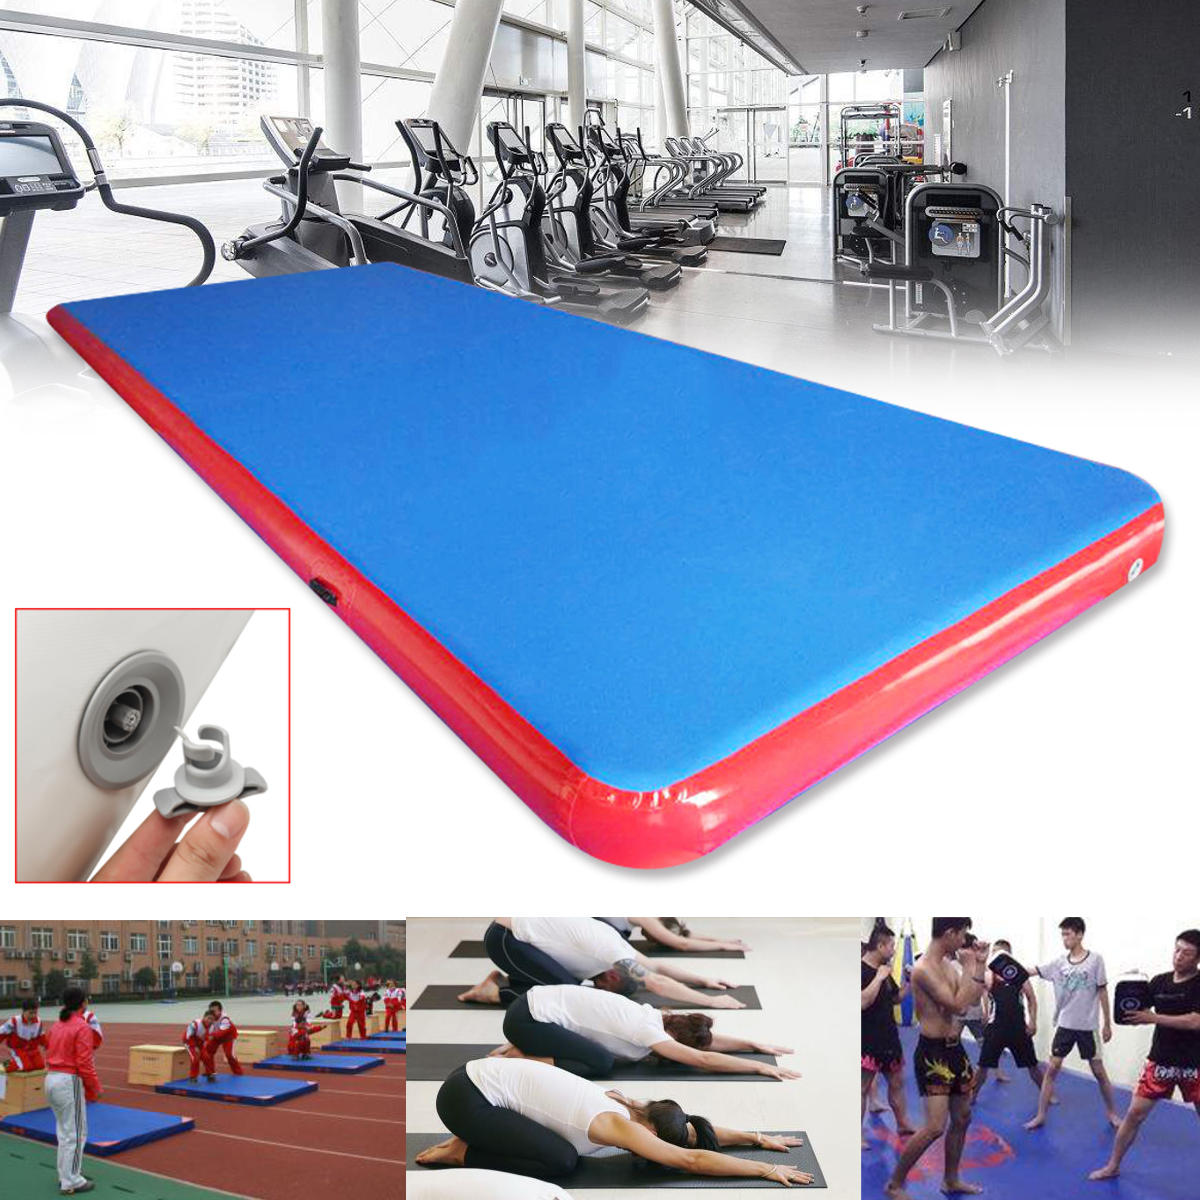 236.2 x 78.74ch nflatable tapis de piste d'air GYM tapis de gymnastique Airtrack tapis de formation de pratique de Tumbling avec kit de réparation